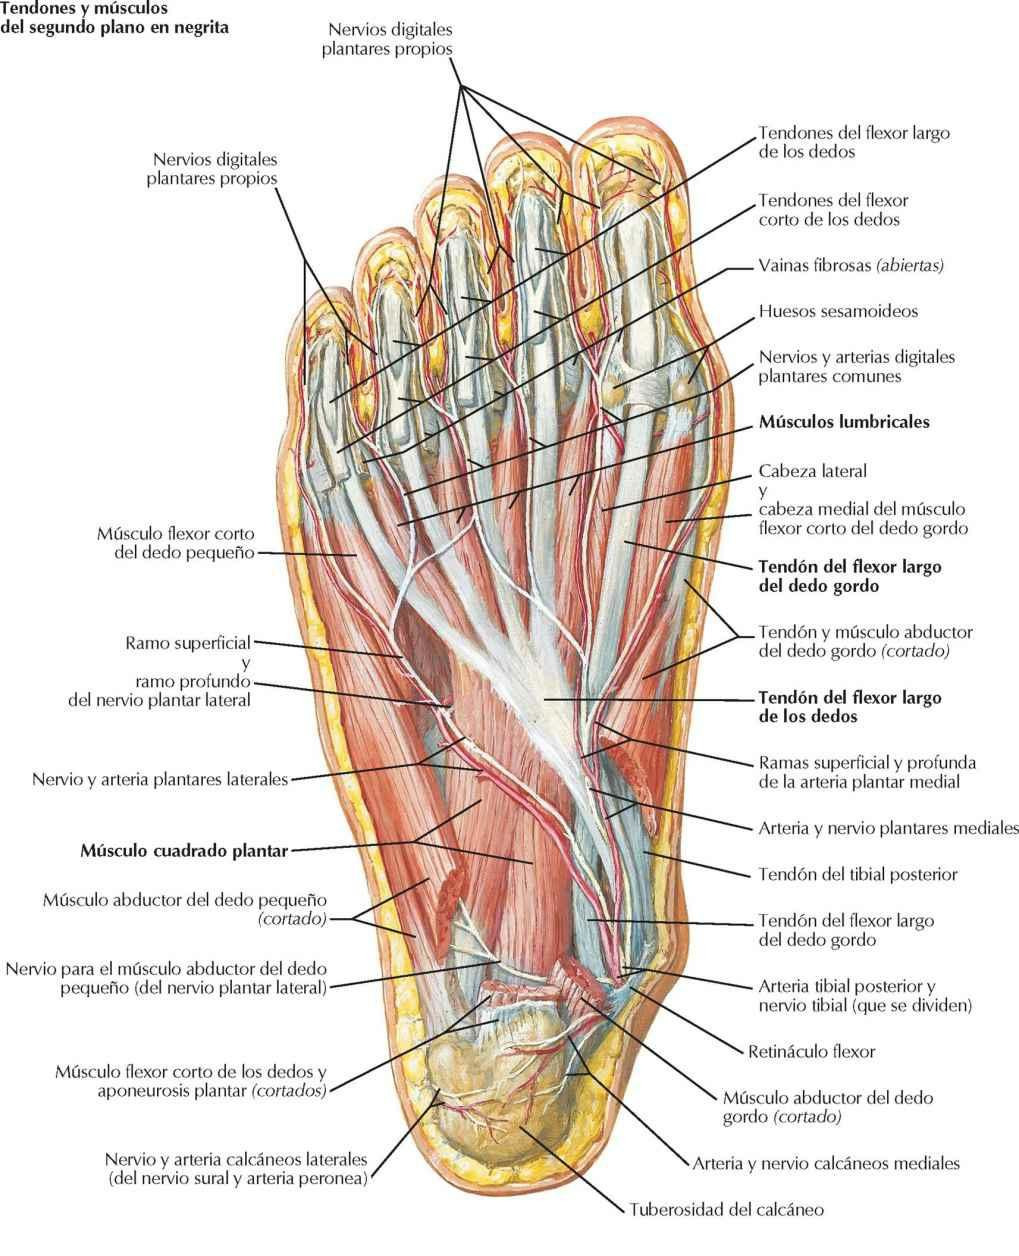 Músculos de la región plantar del pie: segundo plano